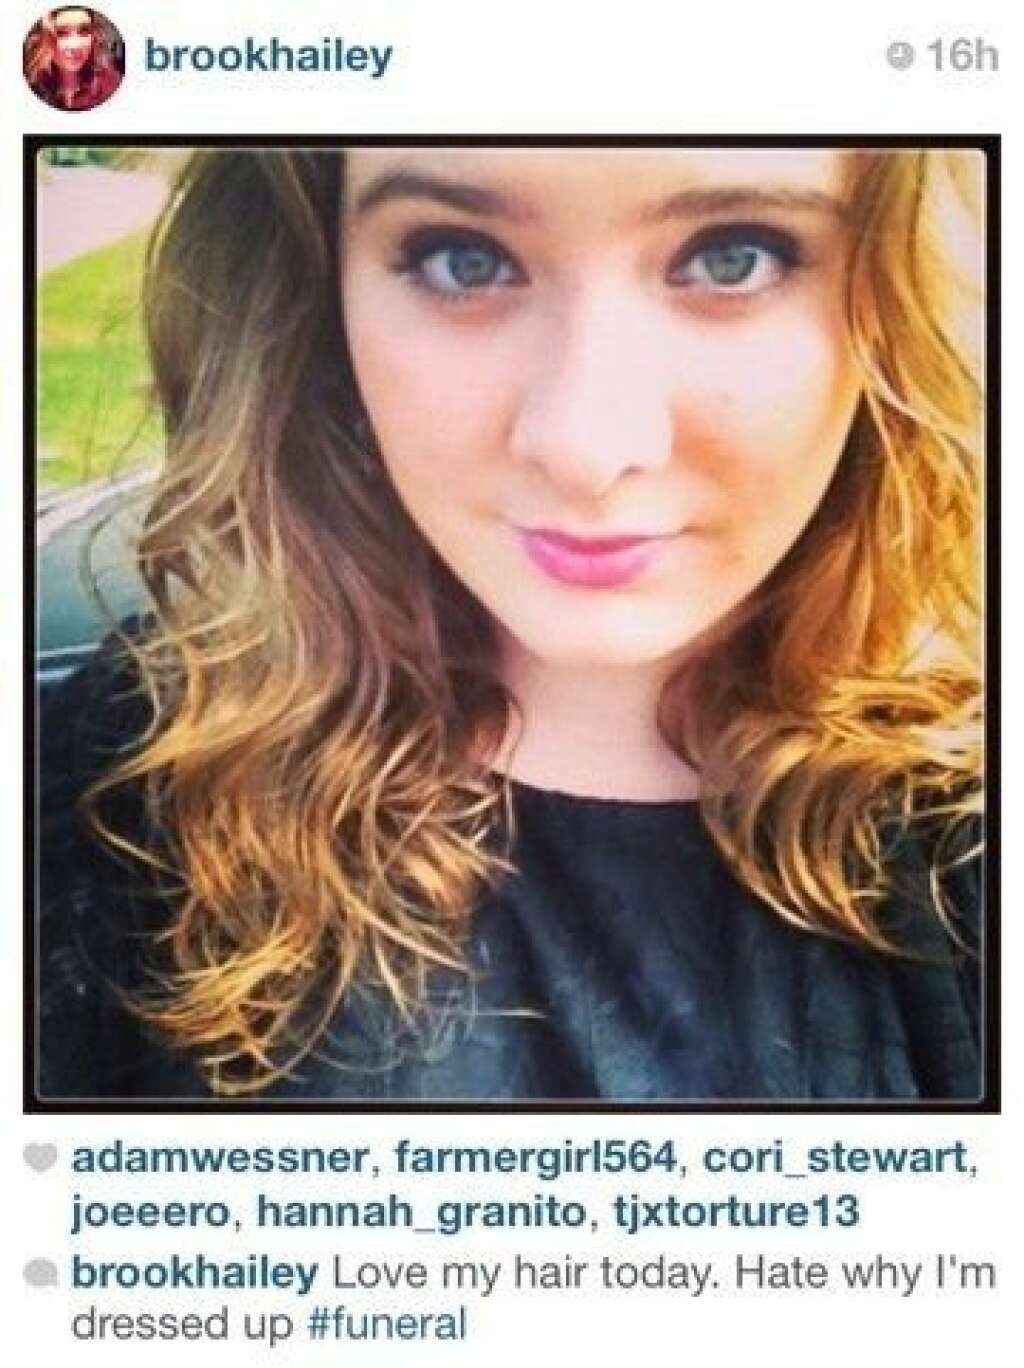 Selfies at Funerals - "J'adore mes cheveux aujourd'hui. Je déteste la raison de ma tenue #enterrement"